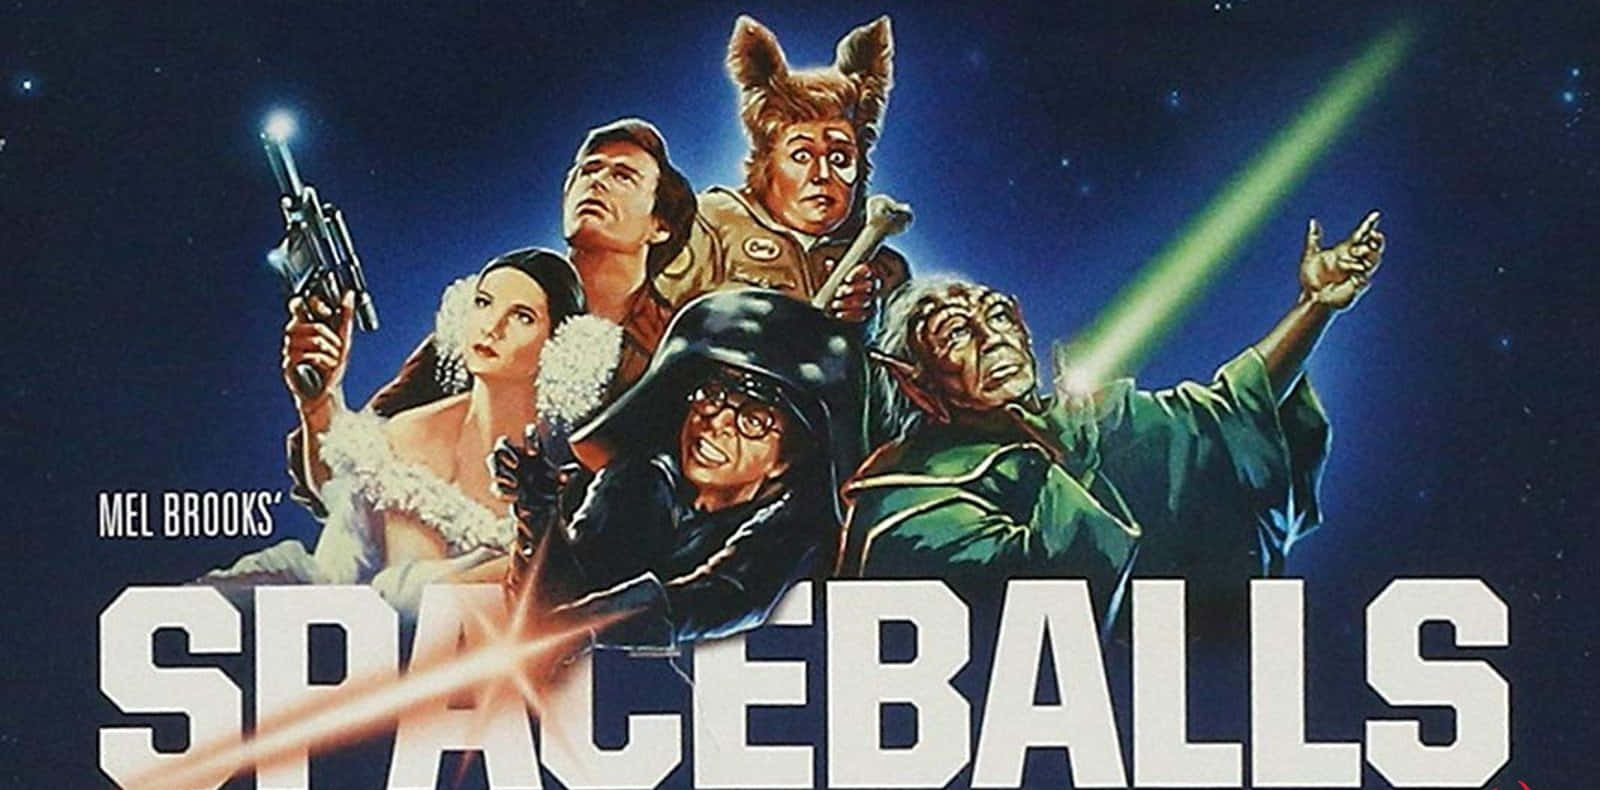 Spaceballs Cast In Iconic Scene